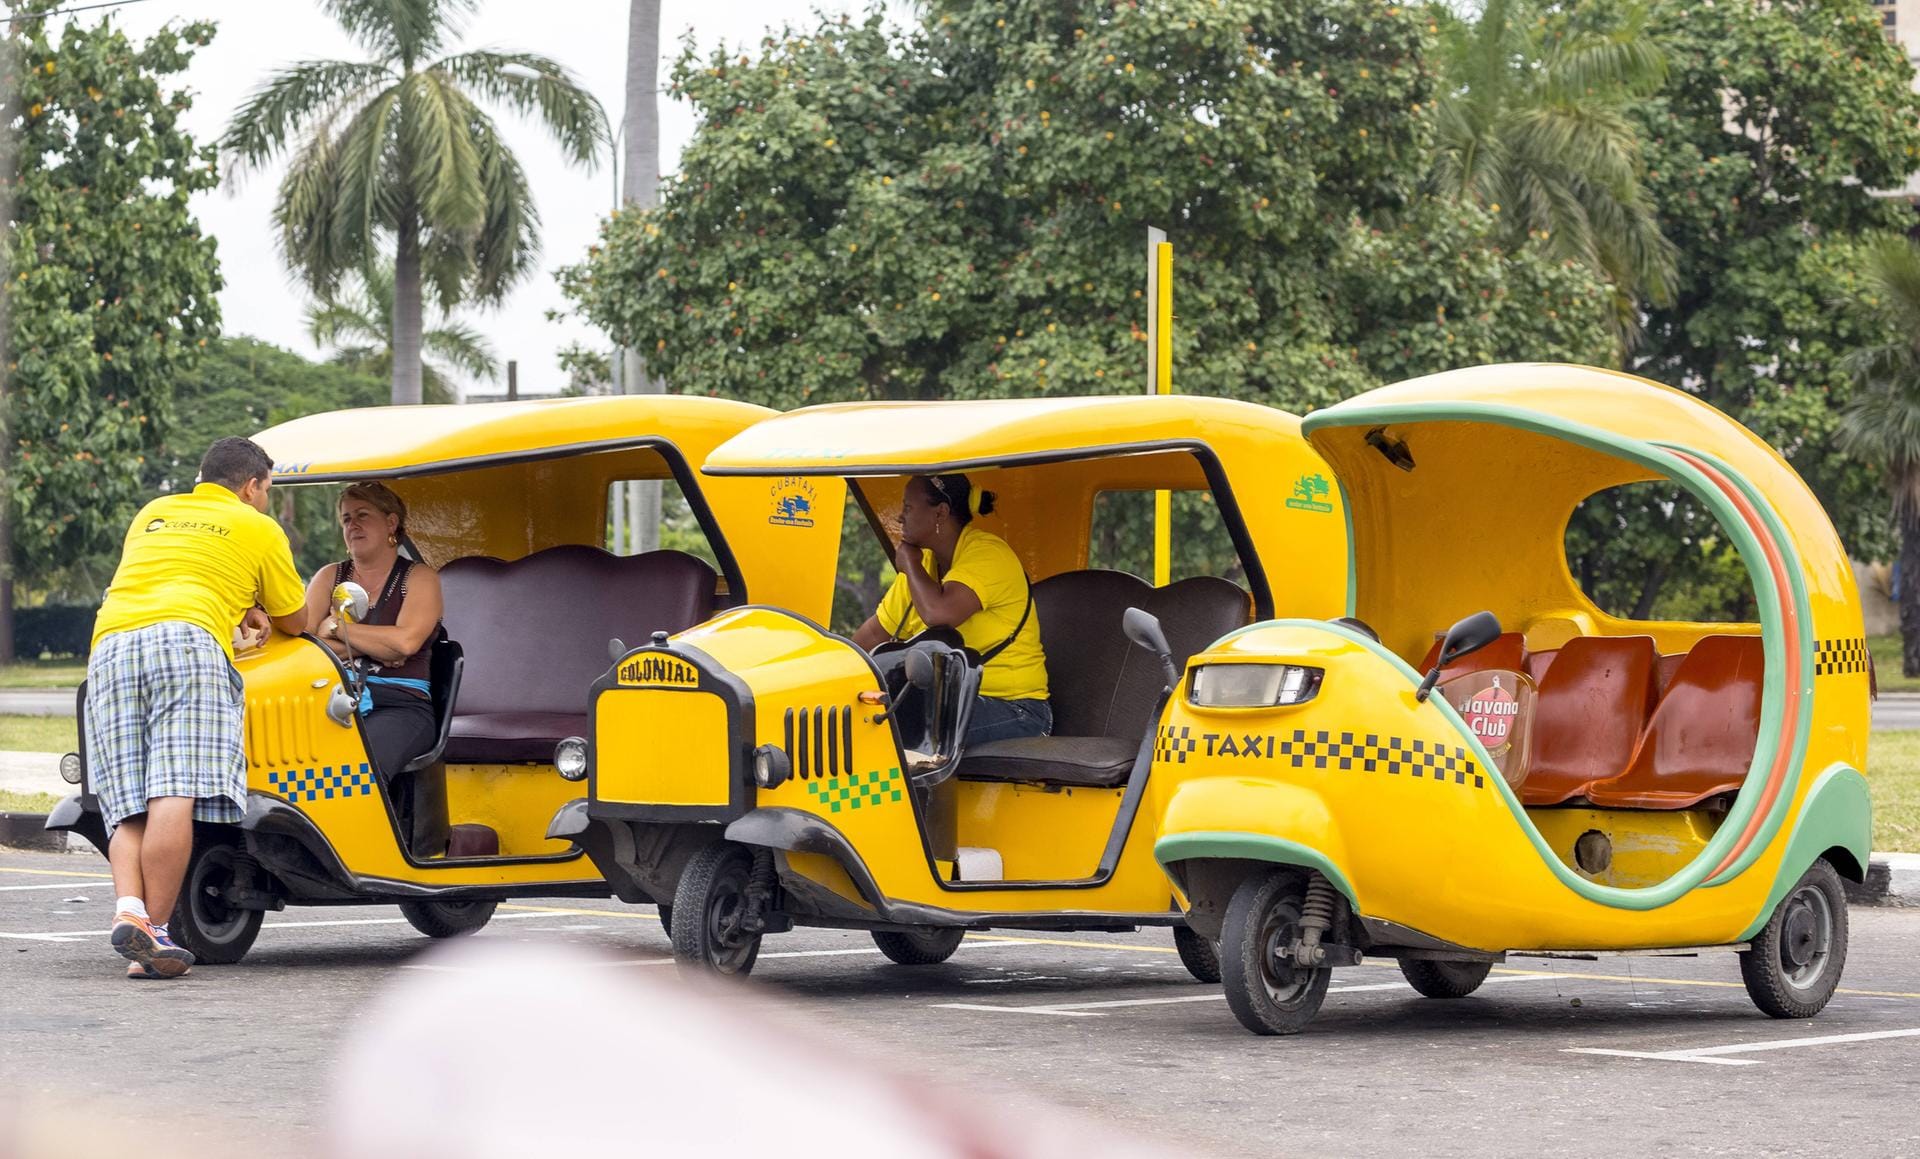 Coco-Taxis gibt es sowohl für Einheimische als auch für Touristen, erkenntlich an unterschiedlichen Farben.